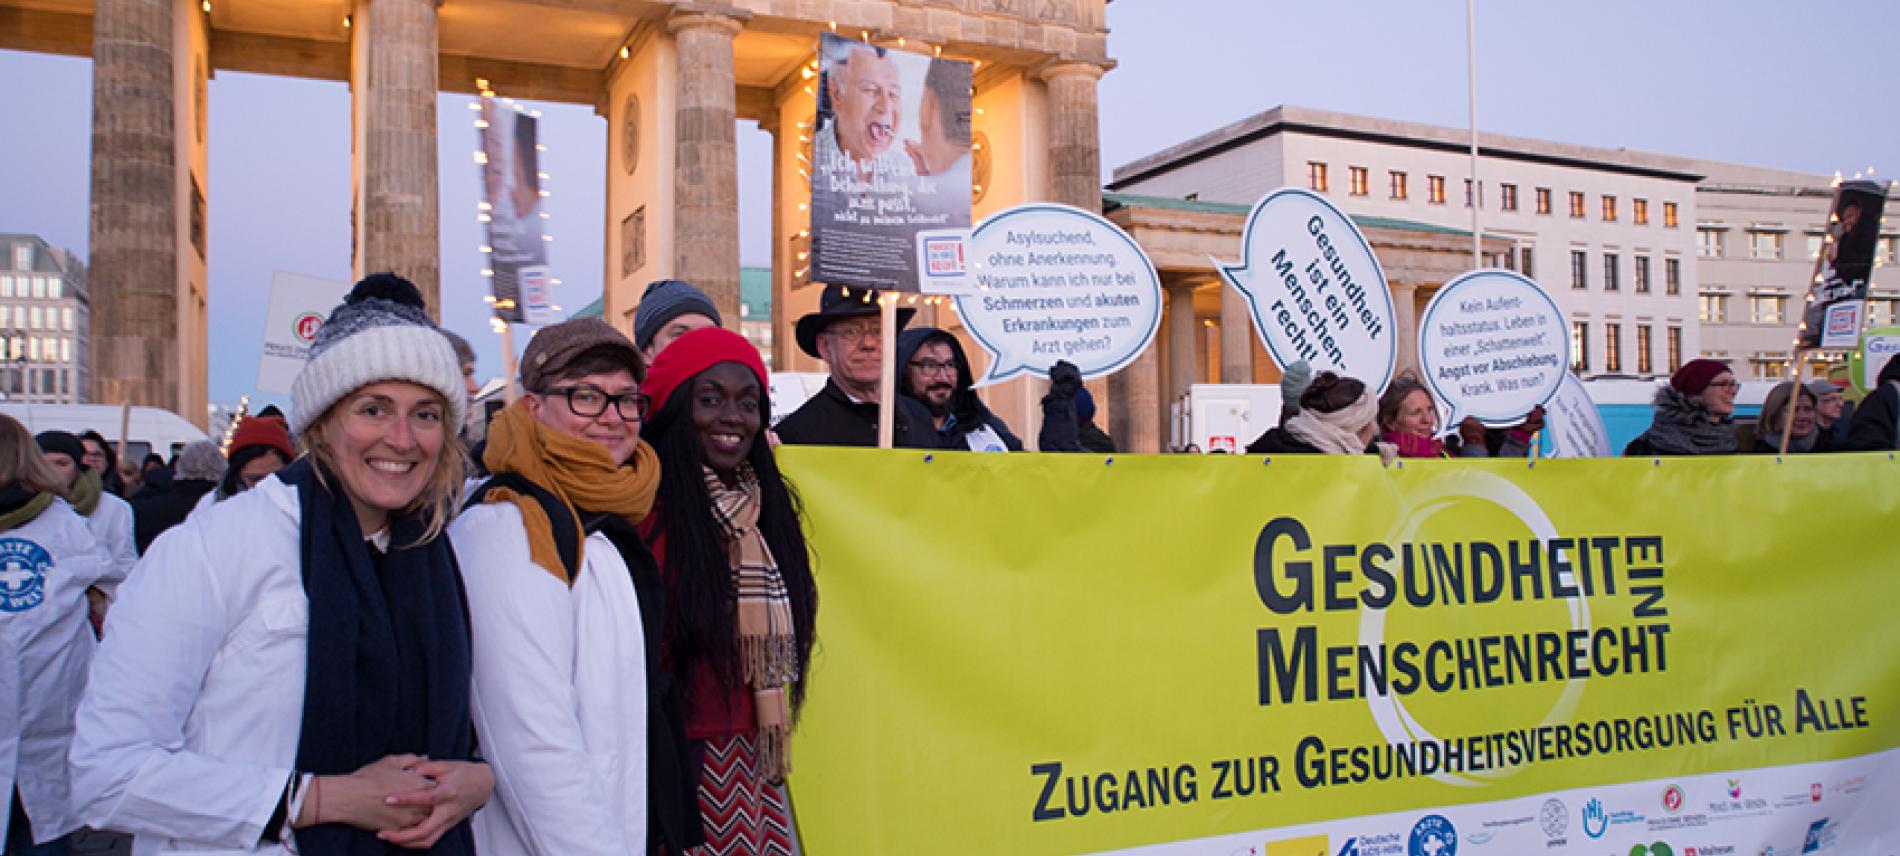 Demonstration für Gesundheitsversorgung in Deutschland- Foto: Renata Chueire 